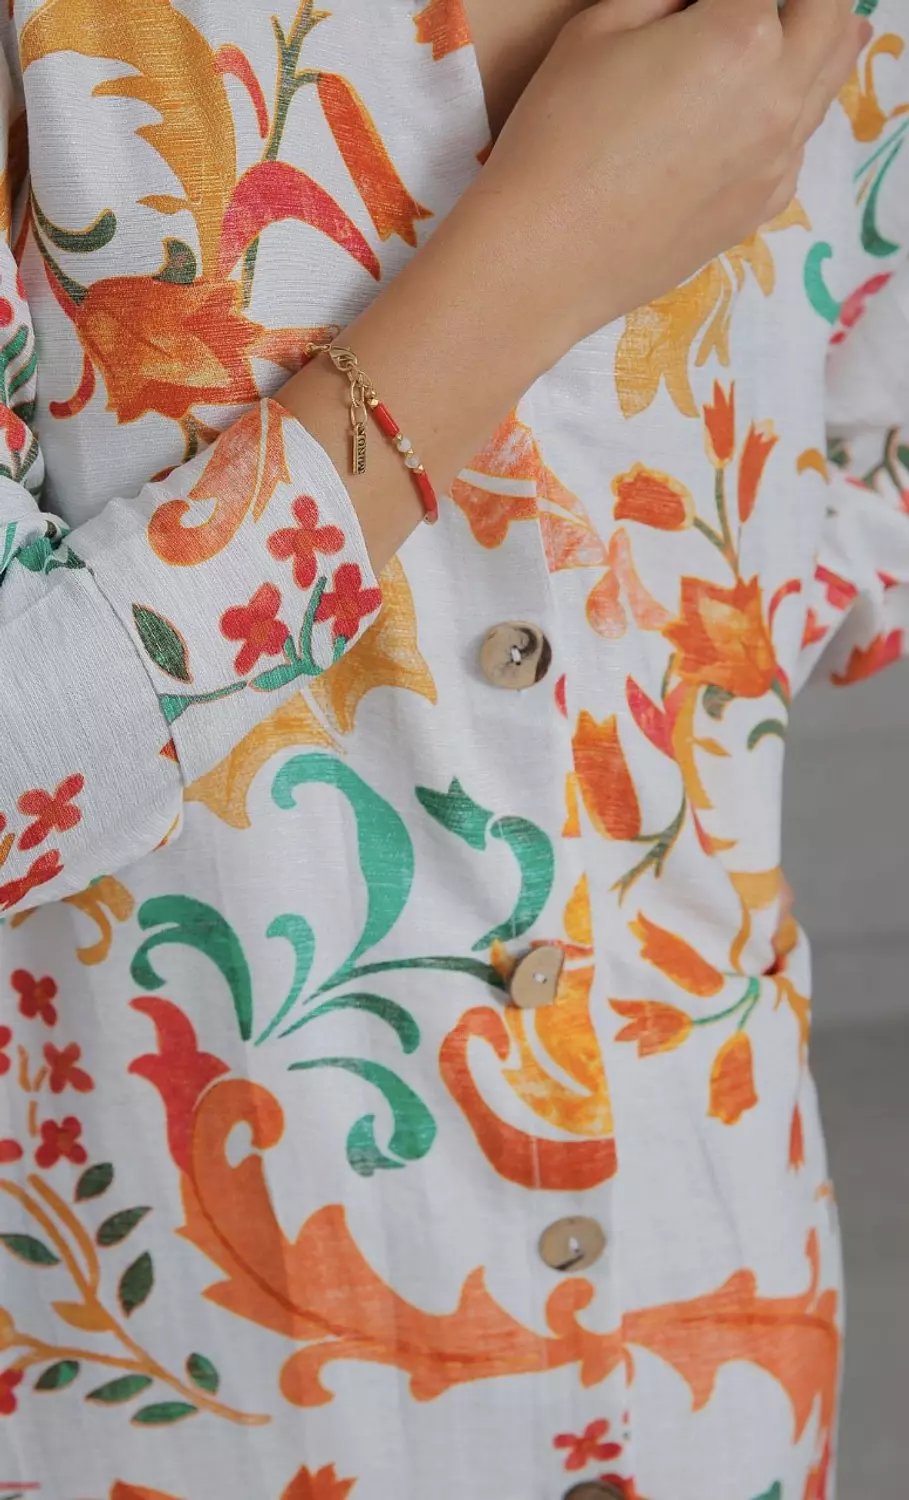 Flowered shirt/dress 5